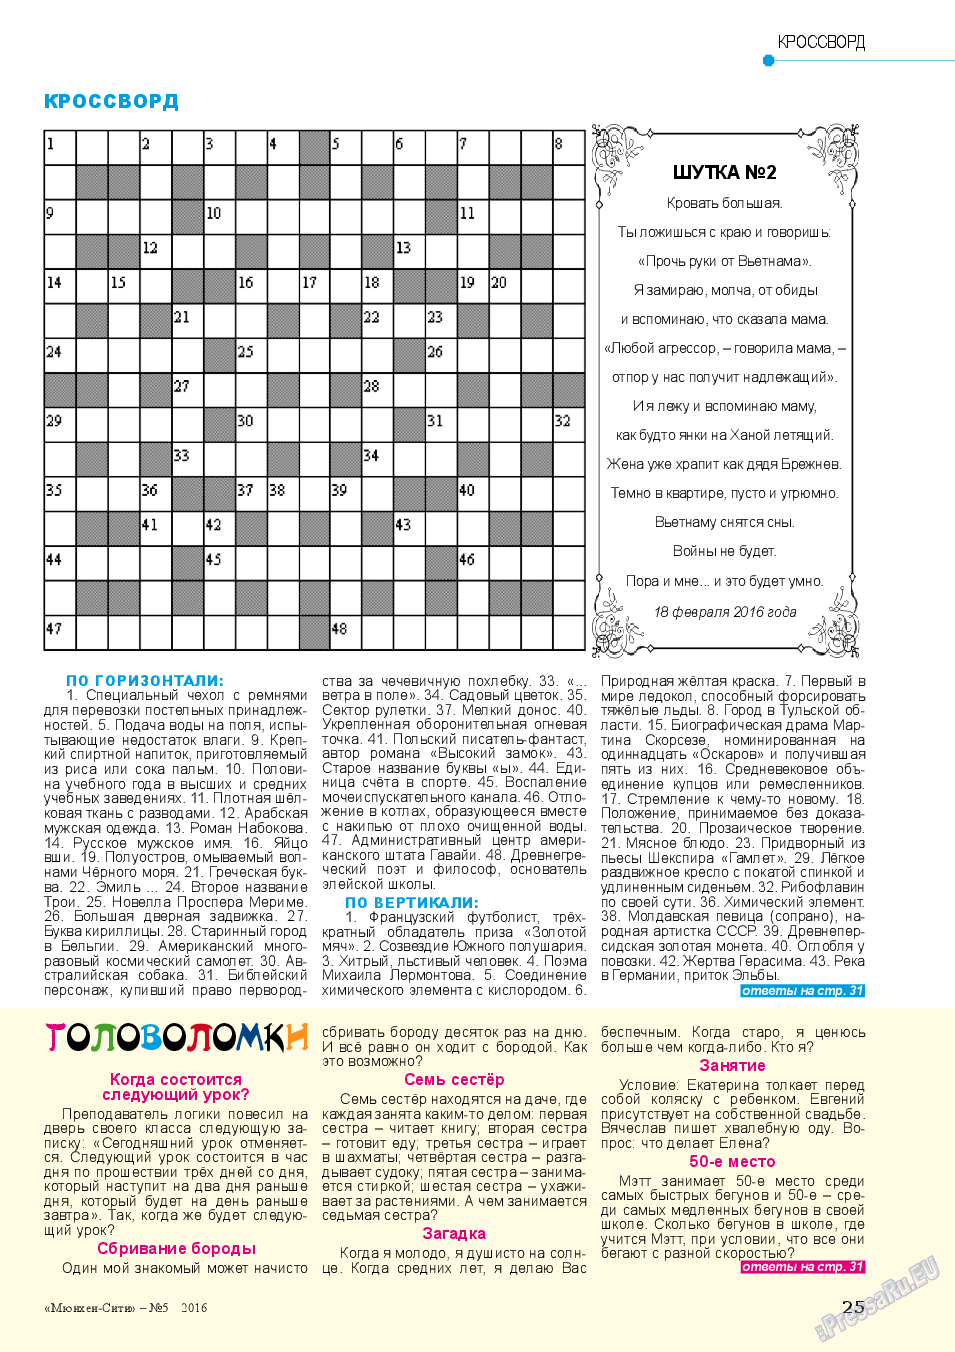 Мюнхен-сити (журнал). 2016 год, номер 5, стр. 25